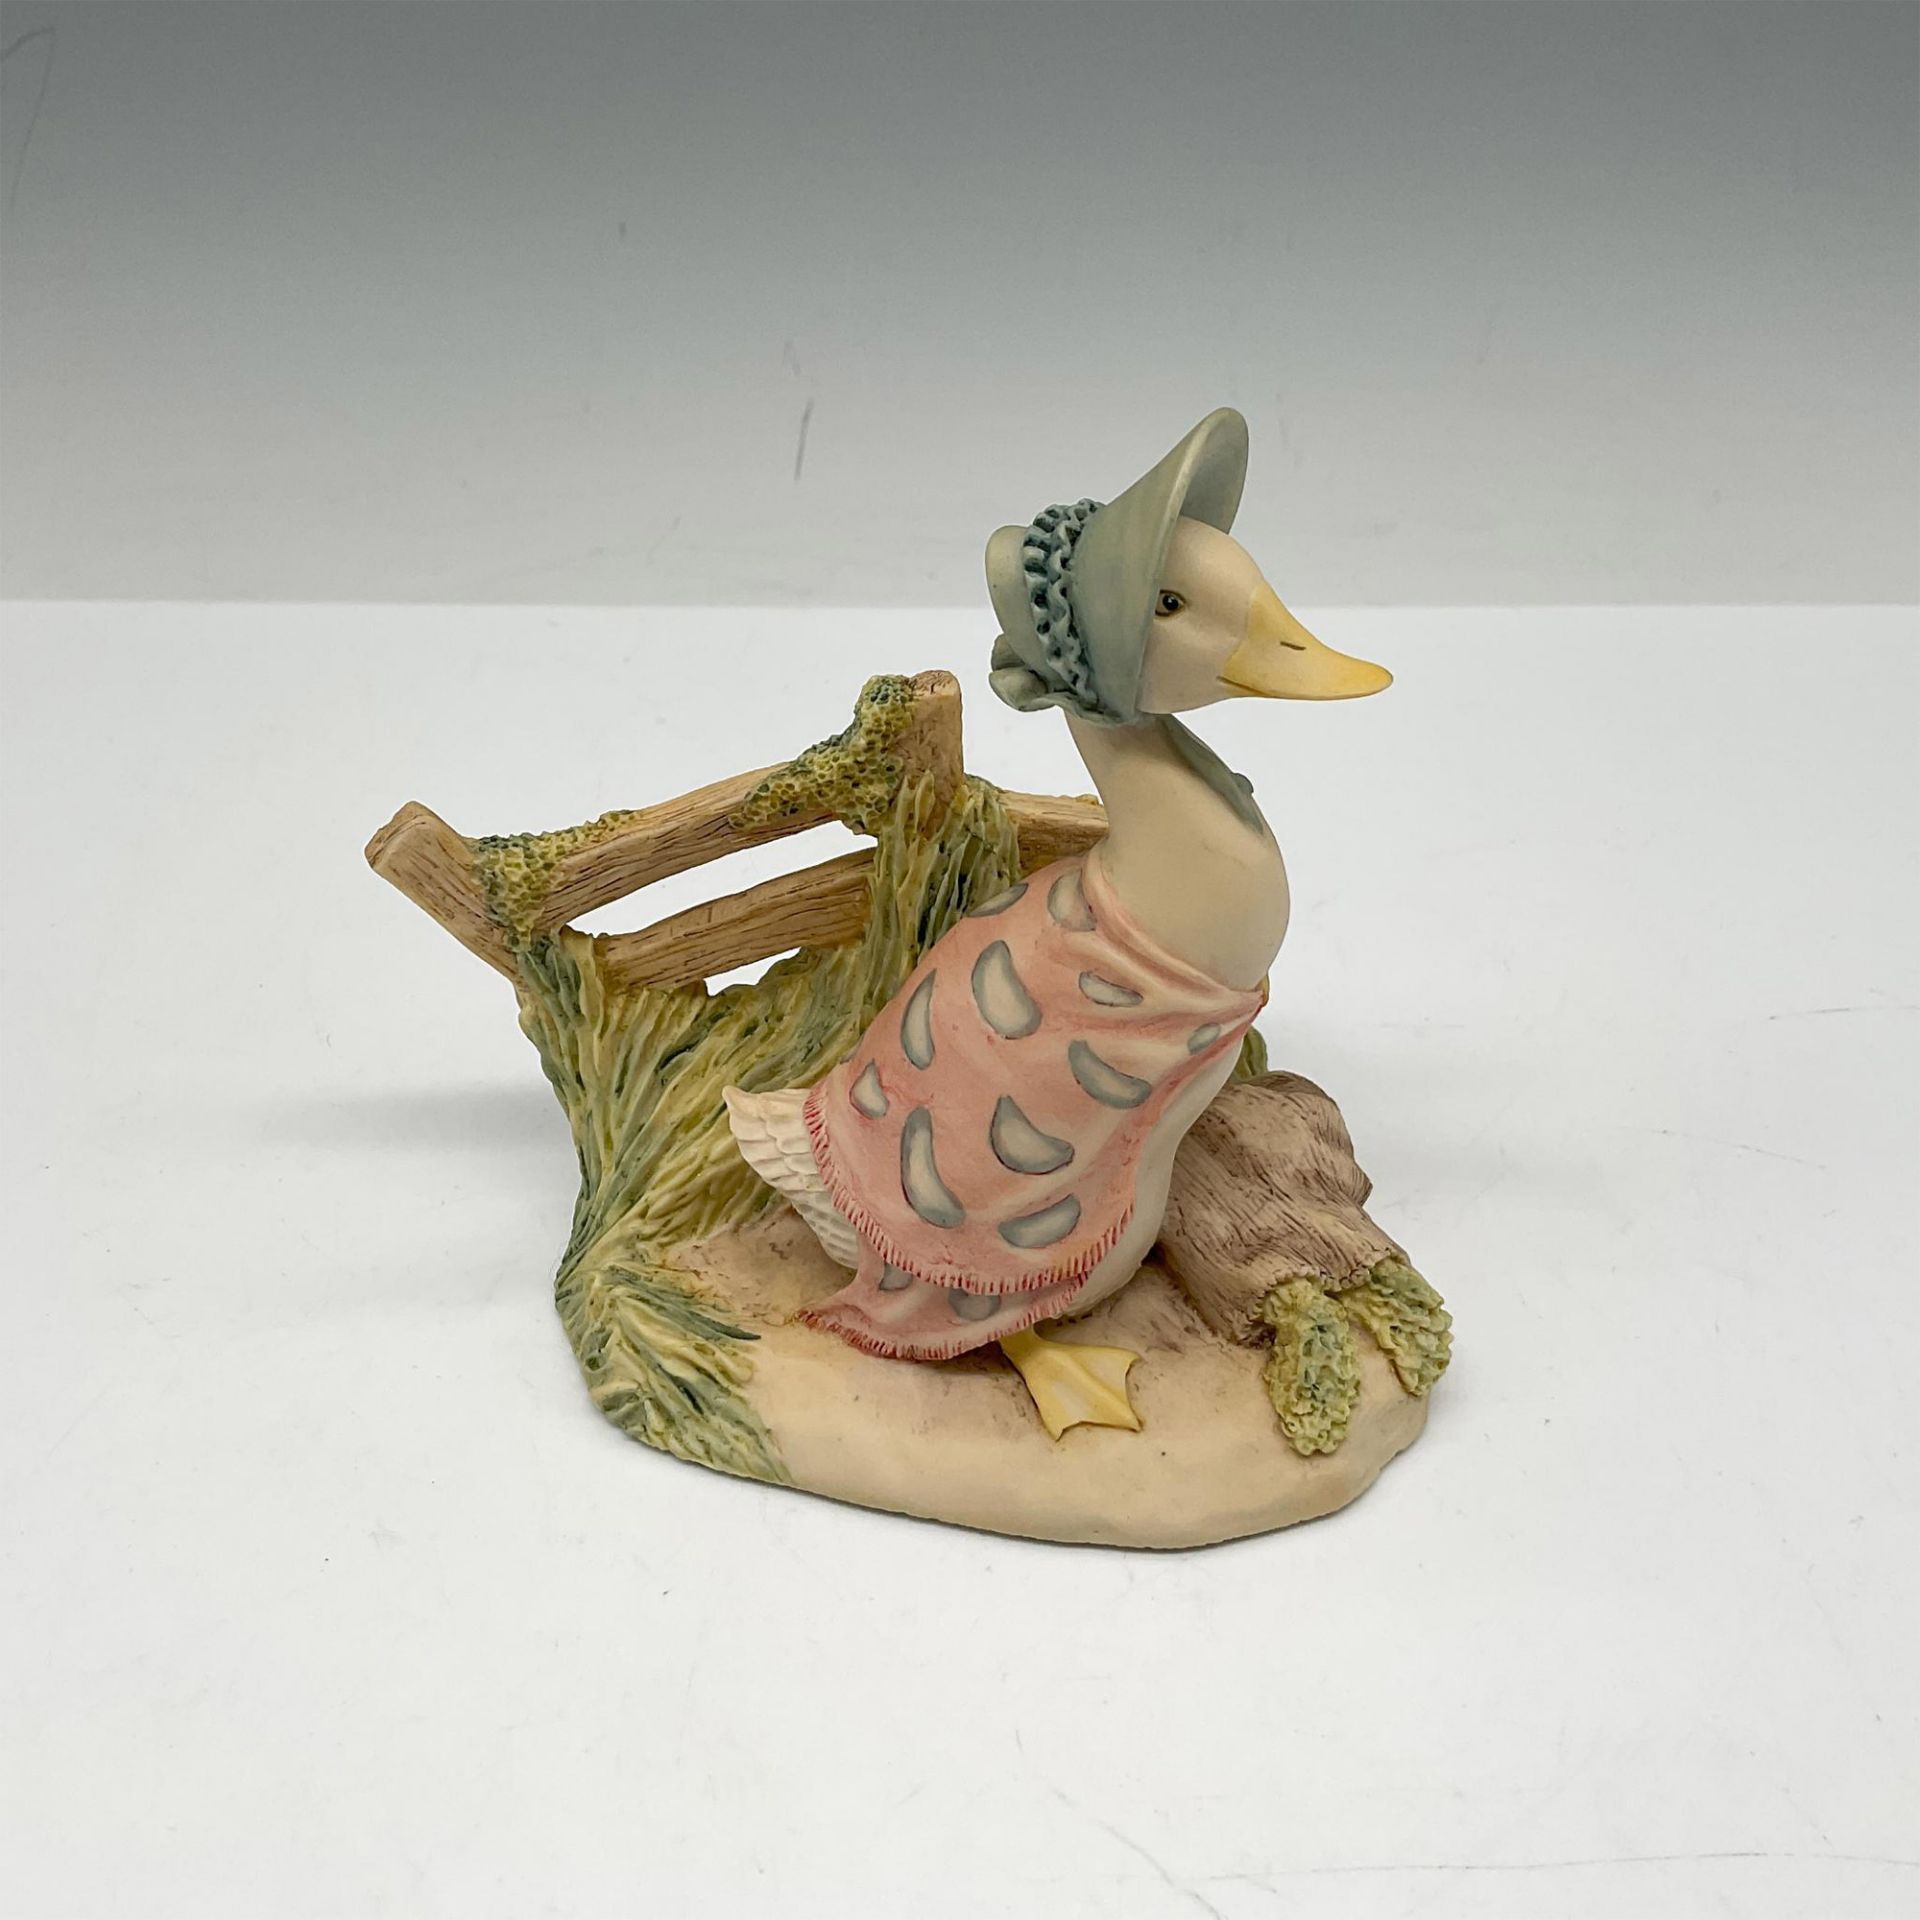 Vintage Beatrix Potter Figurine, Jemima Puddleduck Sets Off